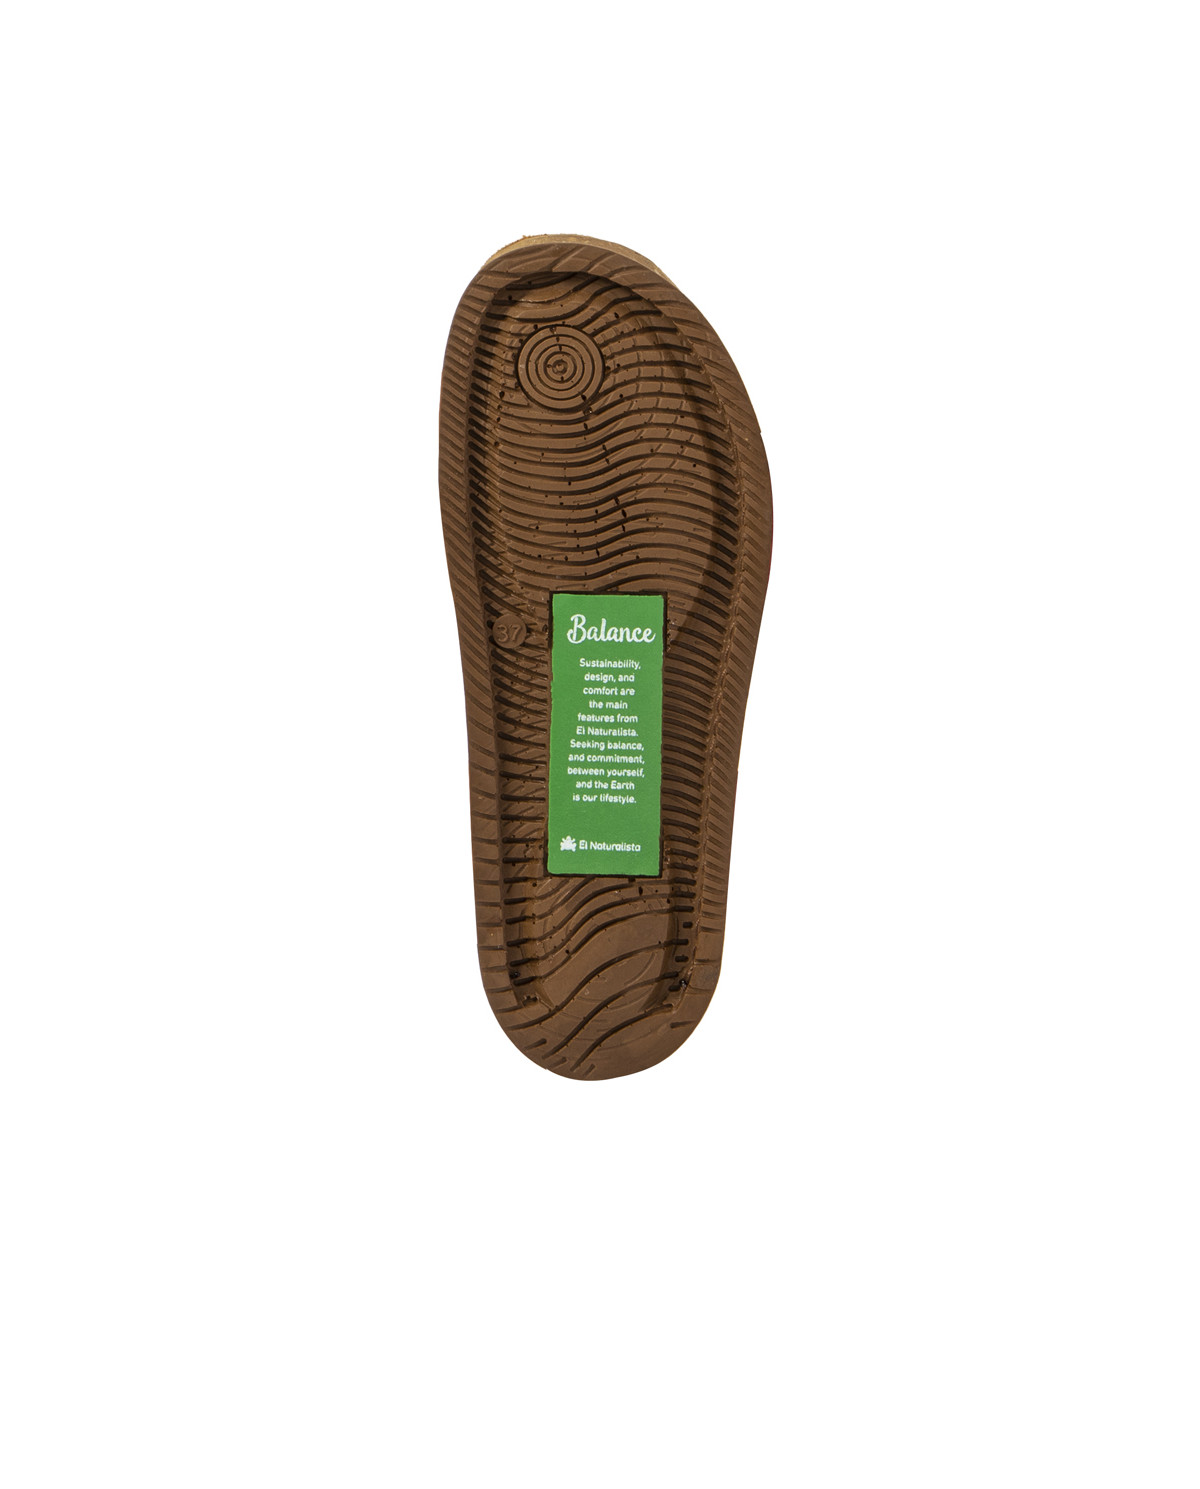 Sandales confortables plates en cuir à scratch et semelles ergonomiques - Jaune - El naturalista